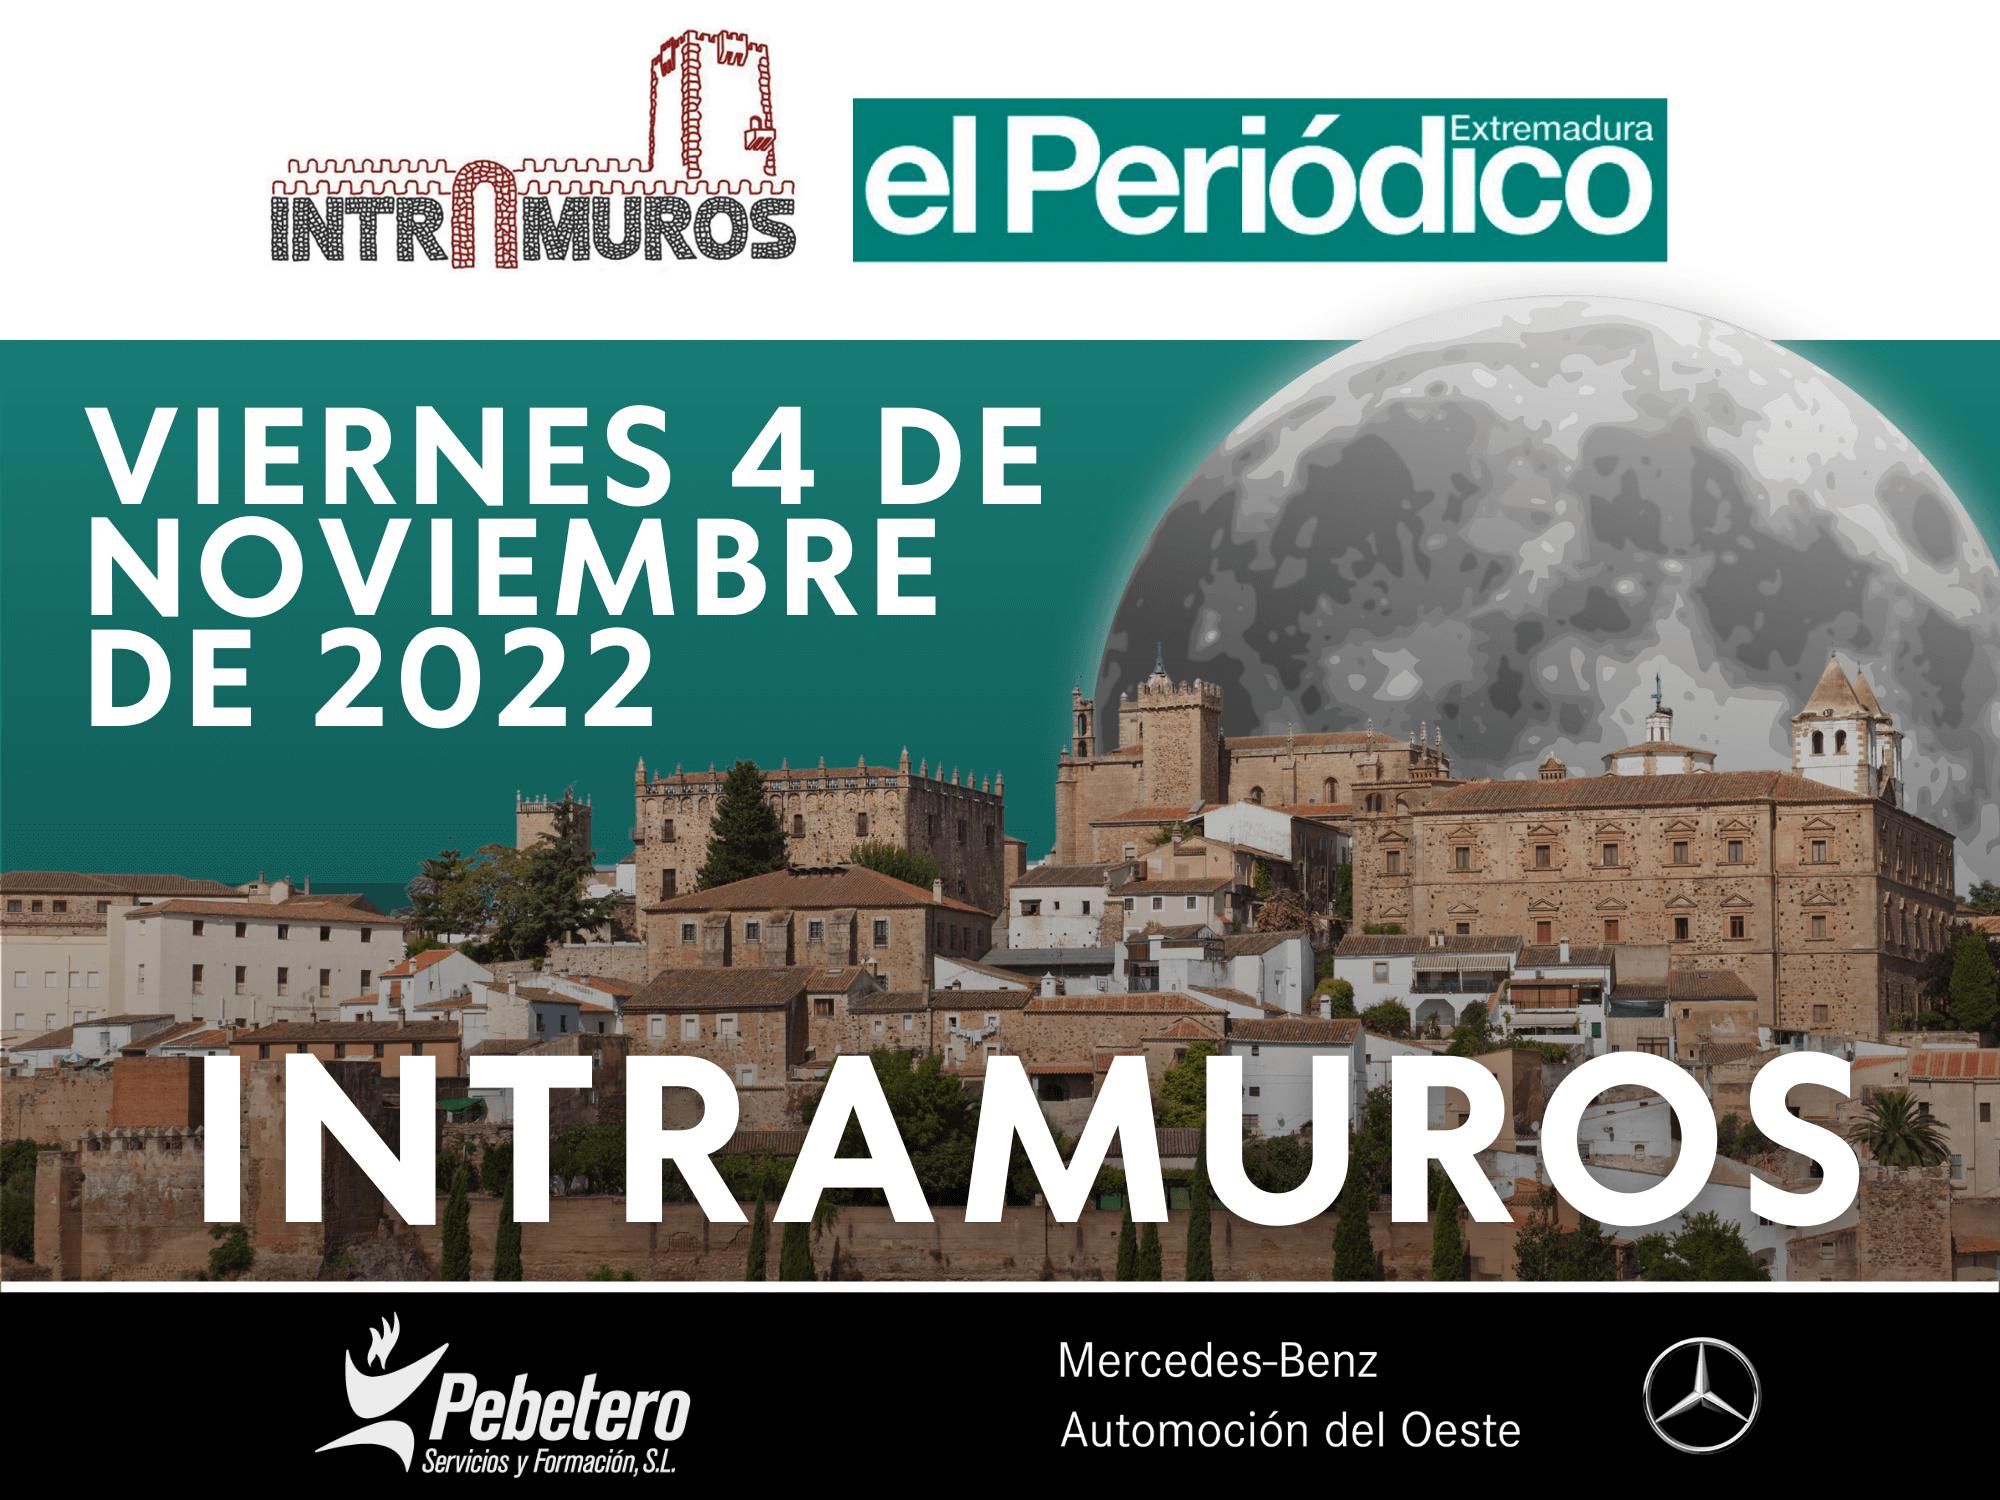 Carrera Intramuros Urban Trail Night El Periódico Extremadura.